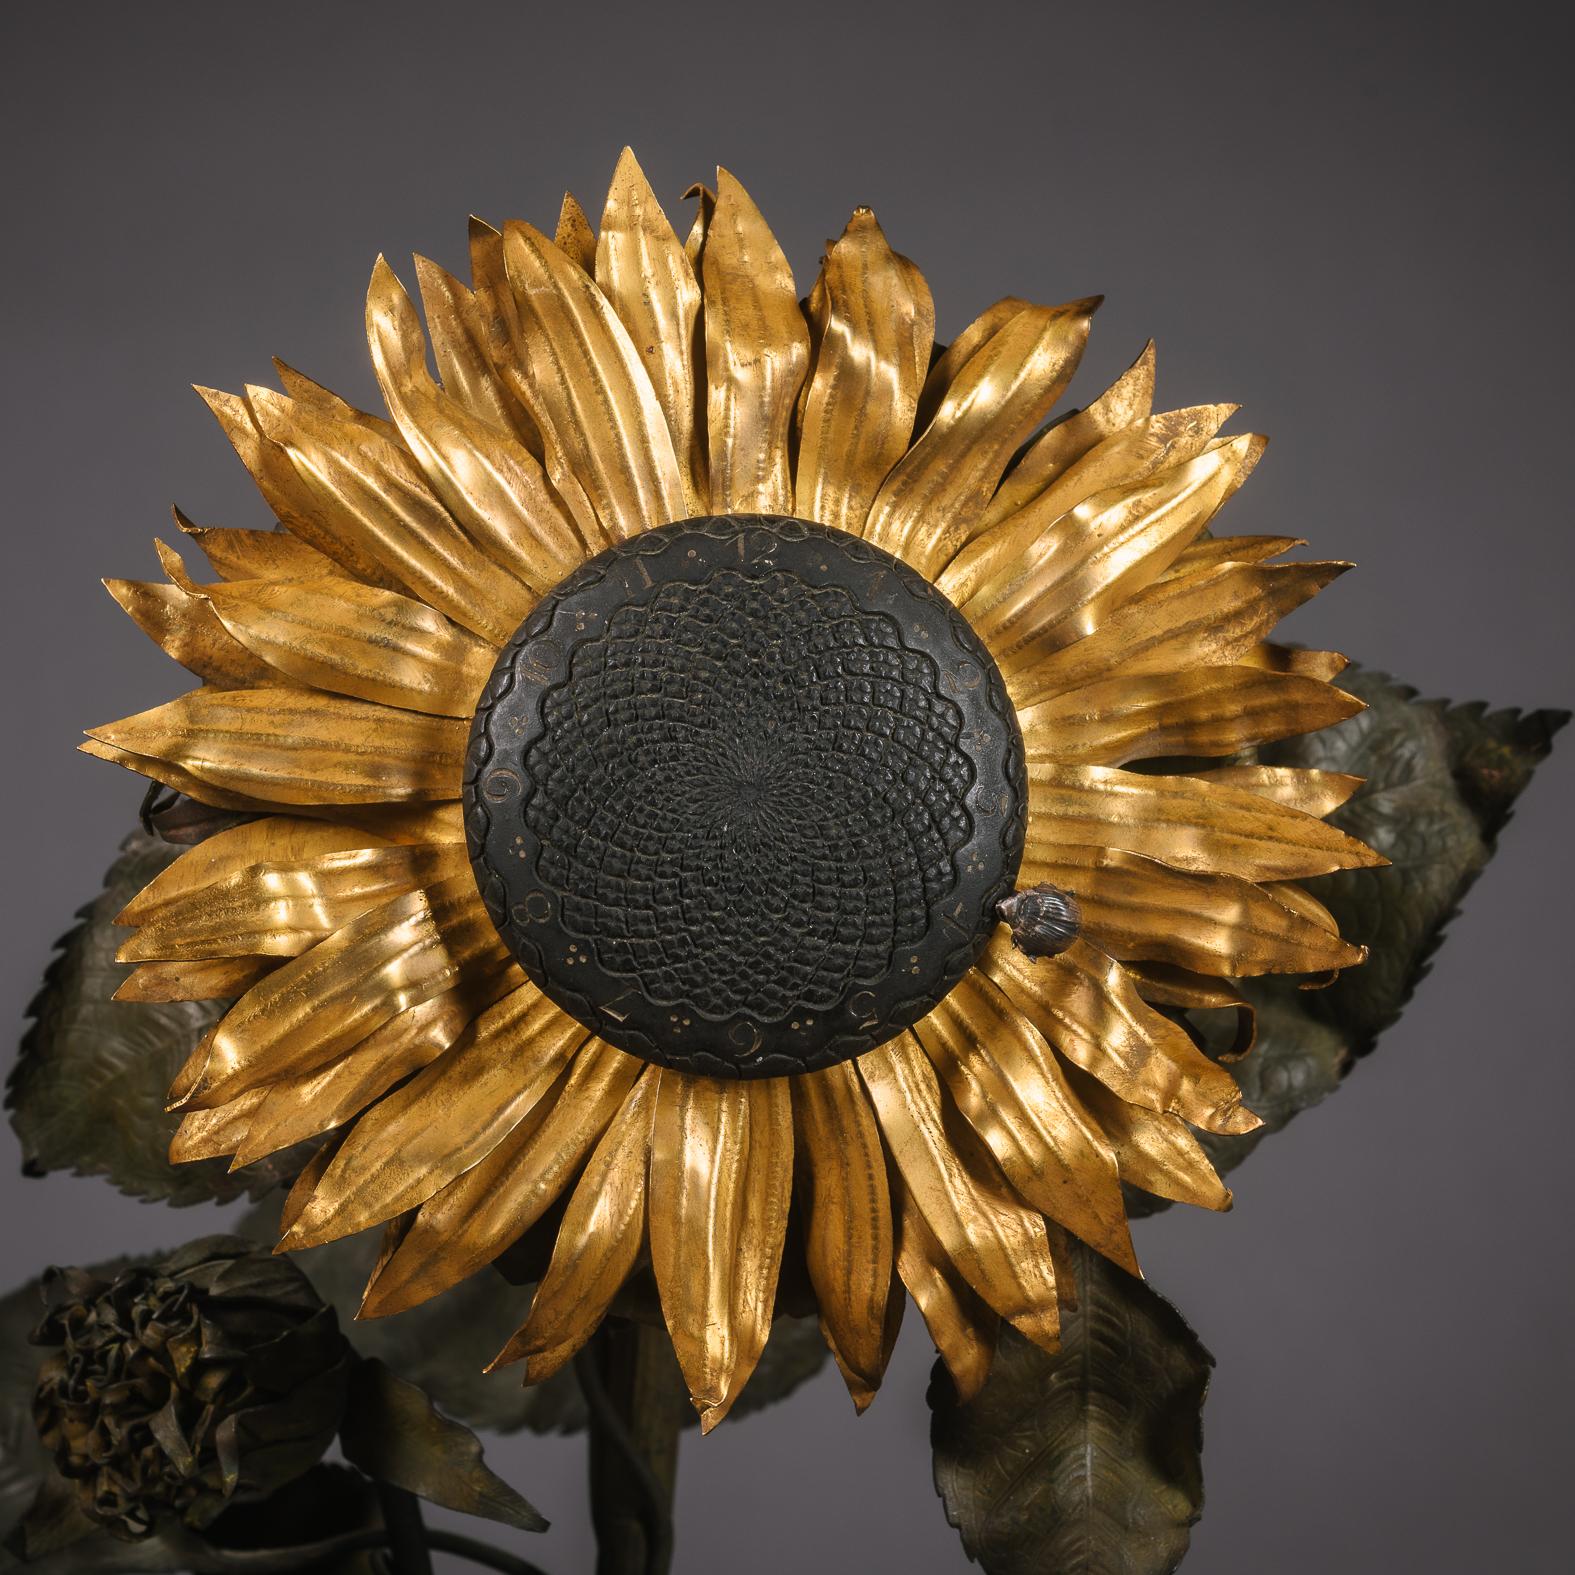 pendule Fleur d'Hélianthe - Rare pendule japonisante en cristal taillé, bronze doré et patiné, Baccarat, Paris.

Poinçon 